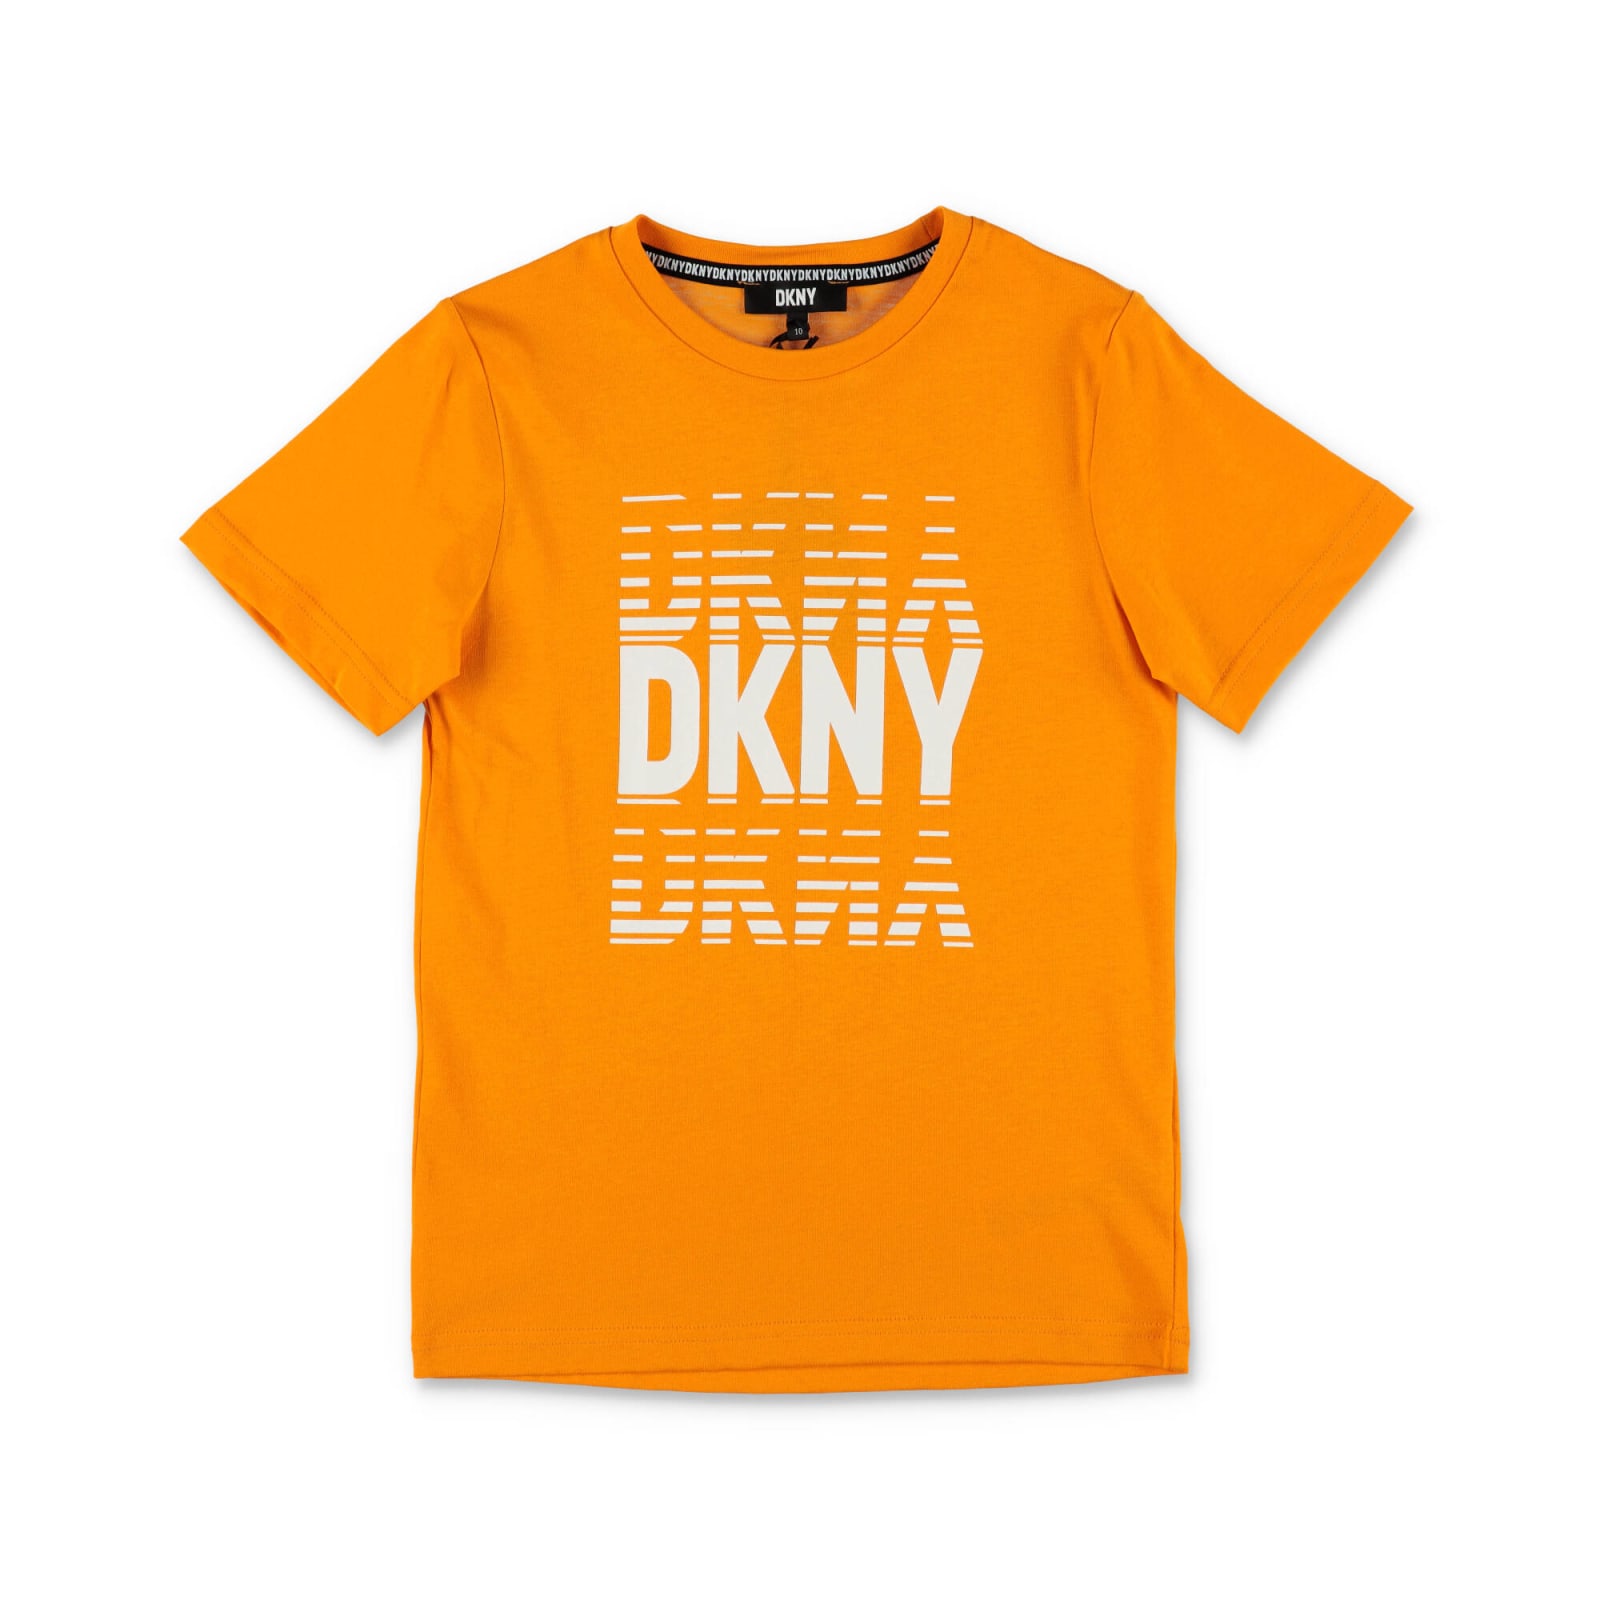 DKNY DKNY T-SHIRT ARANCIONE IN JERSEY DI COTONE BAMBINO